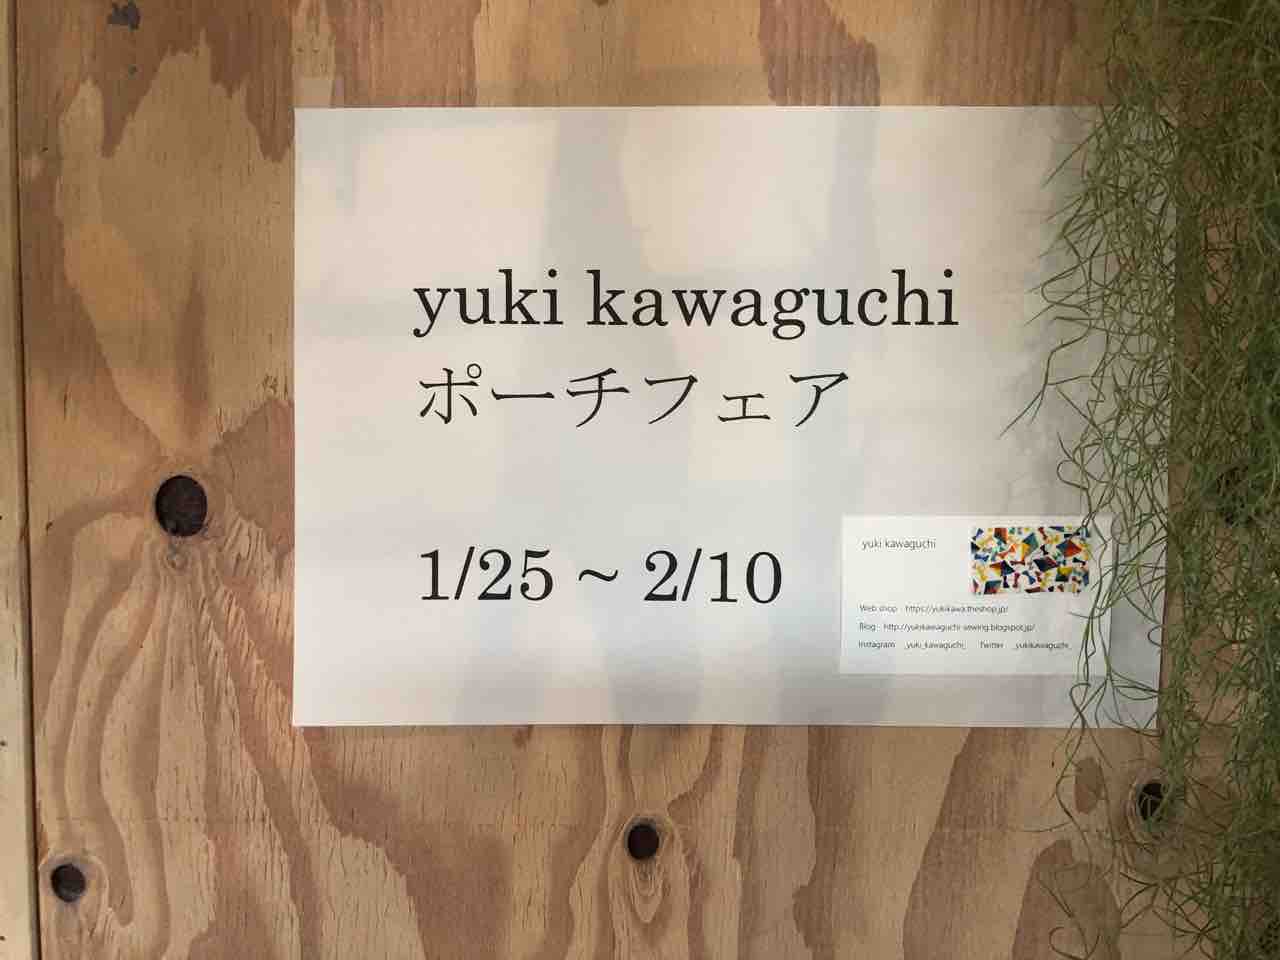 花音「yuki kawaguchi ポーチフェア」